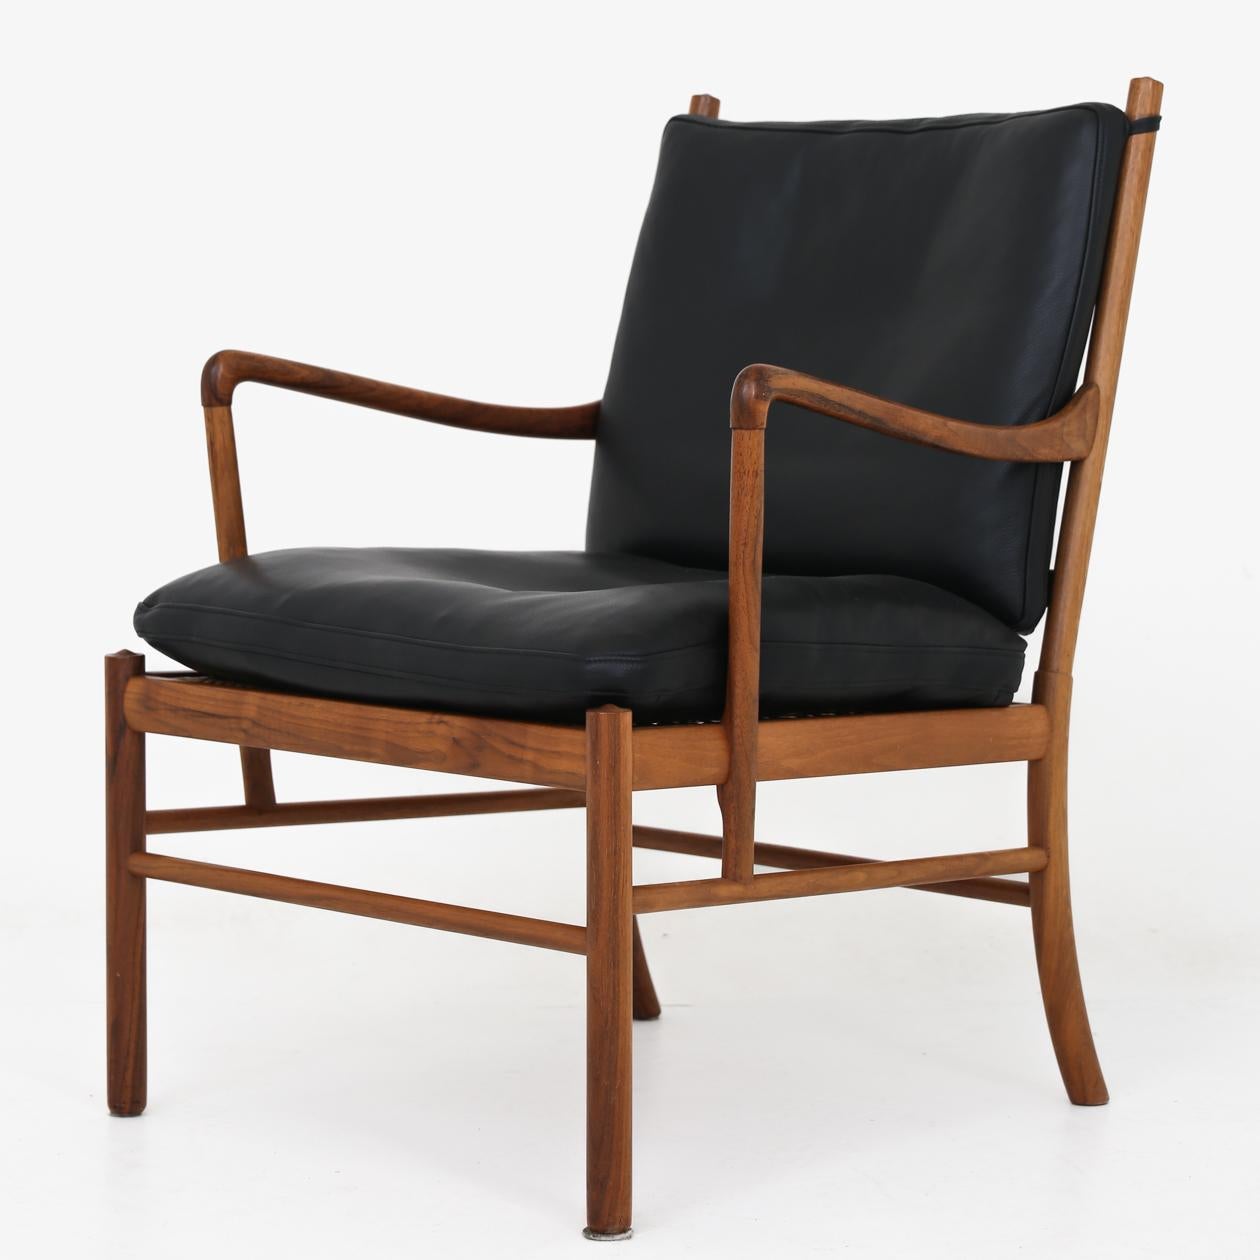 Kolonialer Stuhl mit passendem Fußhocker aus Nussbaum und schwarzem Leder. Von Ole Wanscher / P.J. Möbel